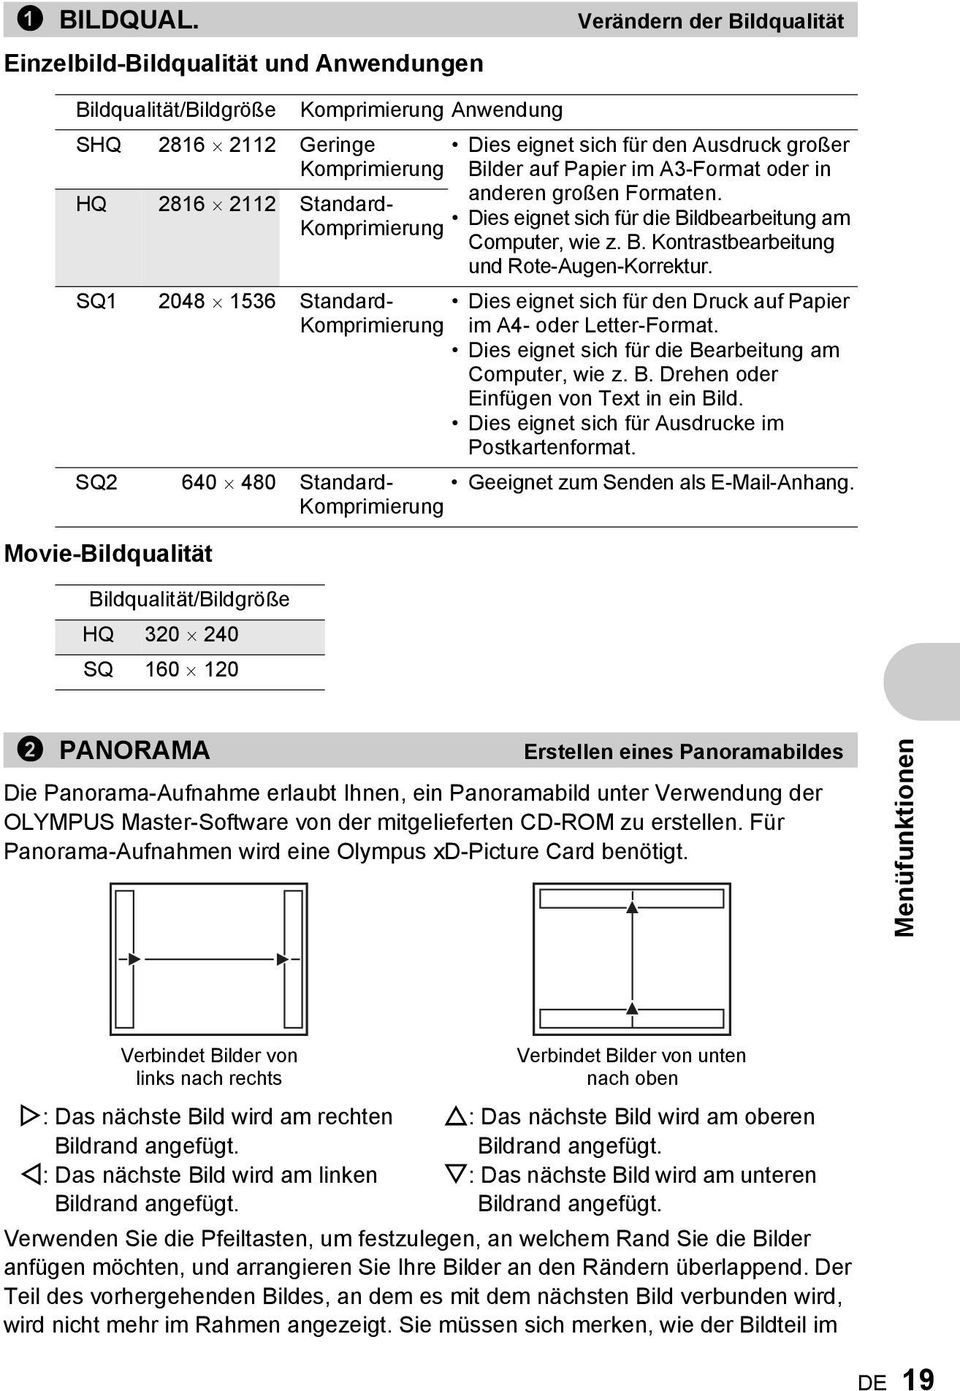 auf Papier im A3-Format oder in anderen großen Formaten. HQ 2816 2112 Standard- Komprimierung Dies eignet sich für die Bildbearbeitung am Computer, wie z. B. Kontrastbearbeitung und Rote-Augen-Korrektur.